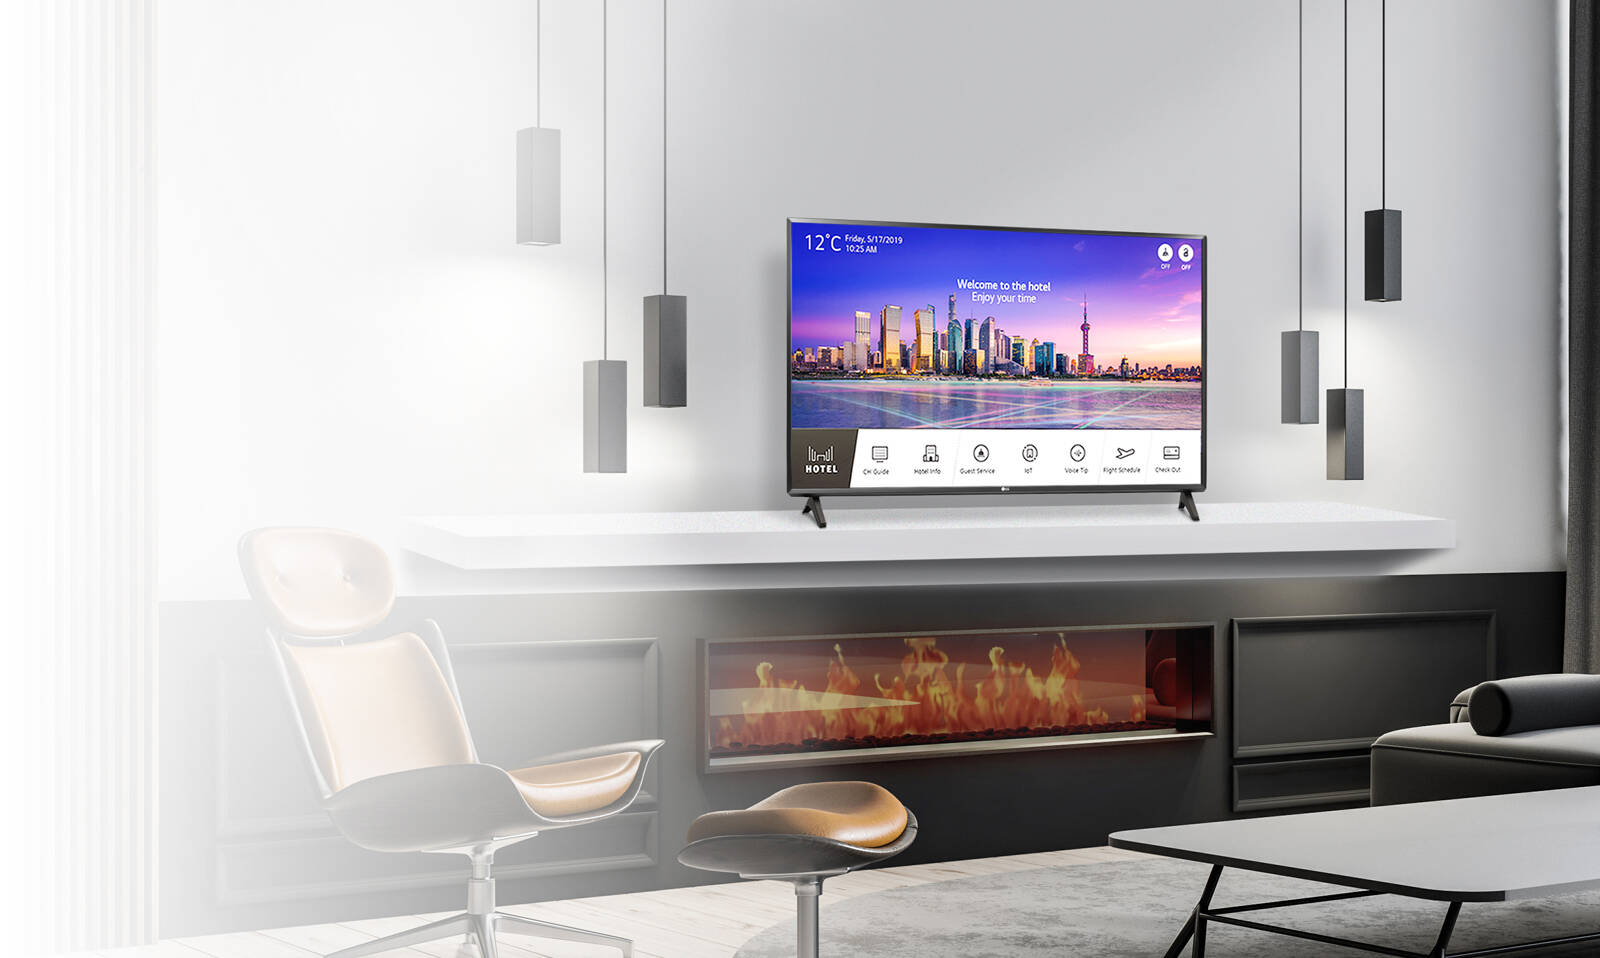 Hotel TV thiết kế tùy ý với Pro:Centric Smart1